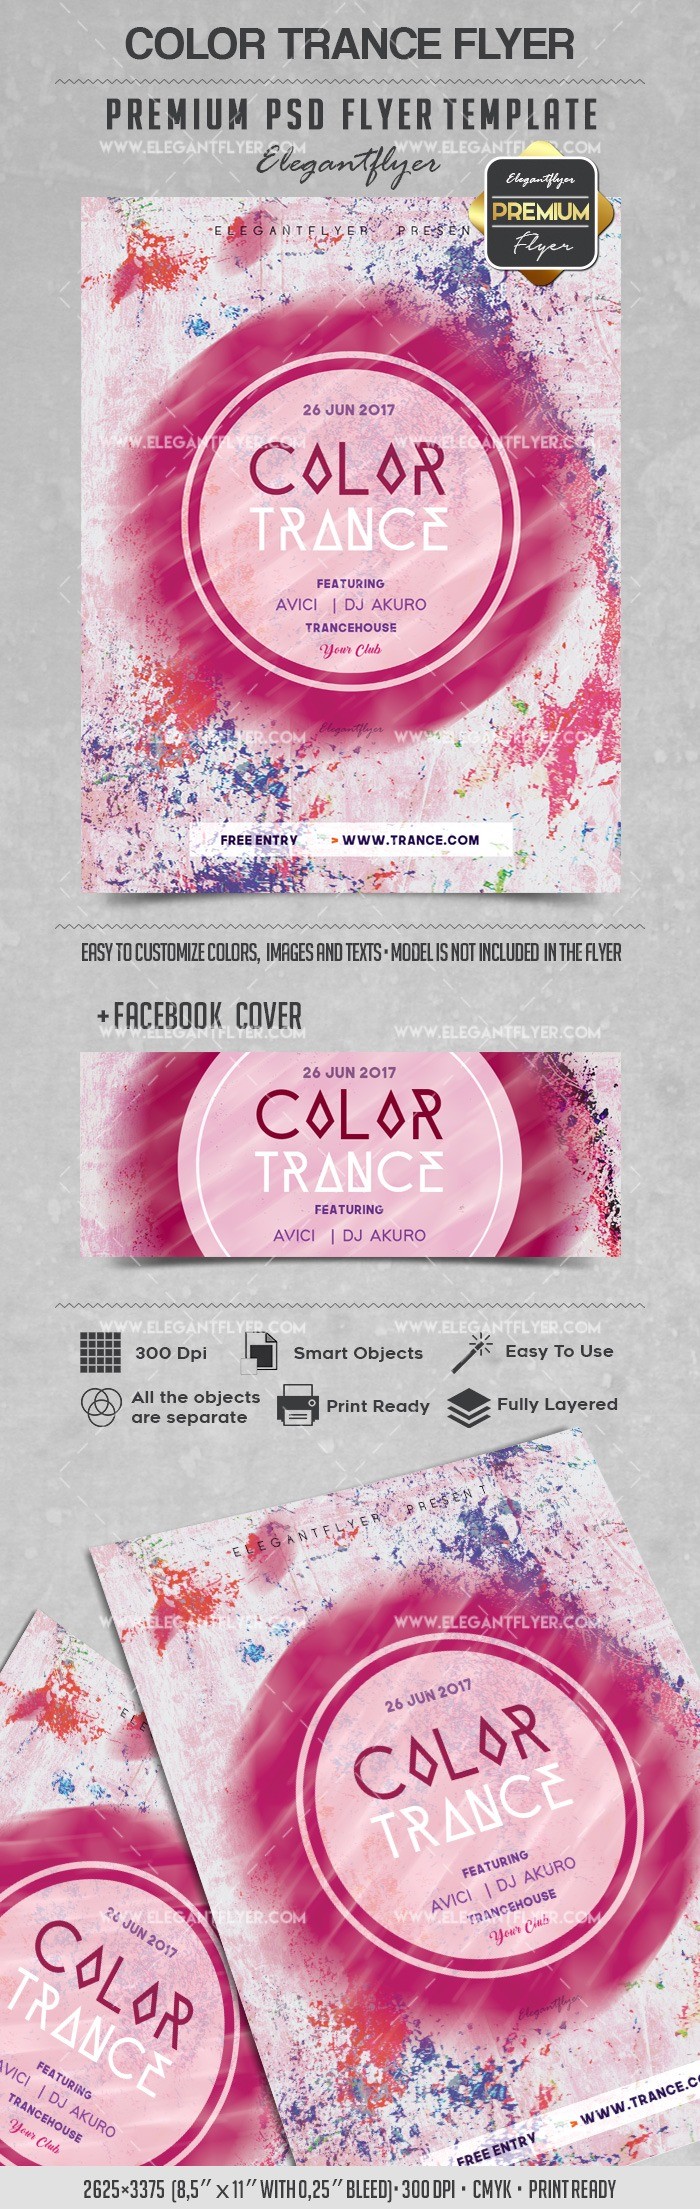 Color Trance by ElegantFlyer